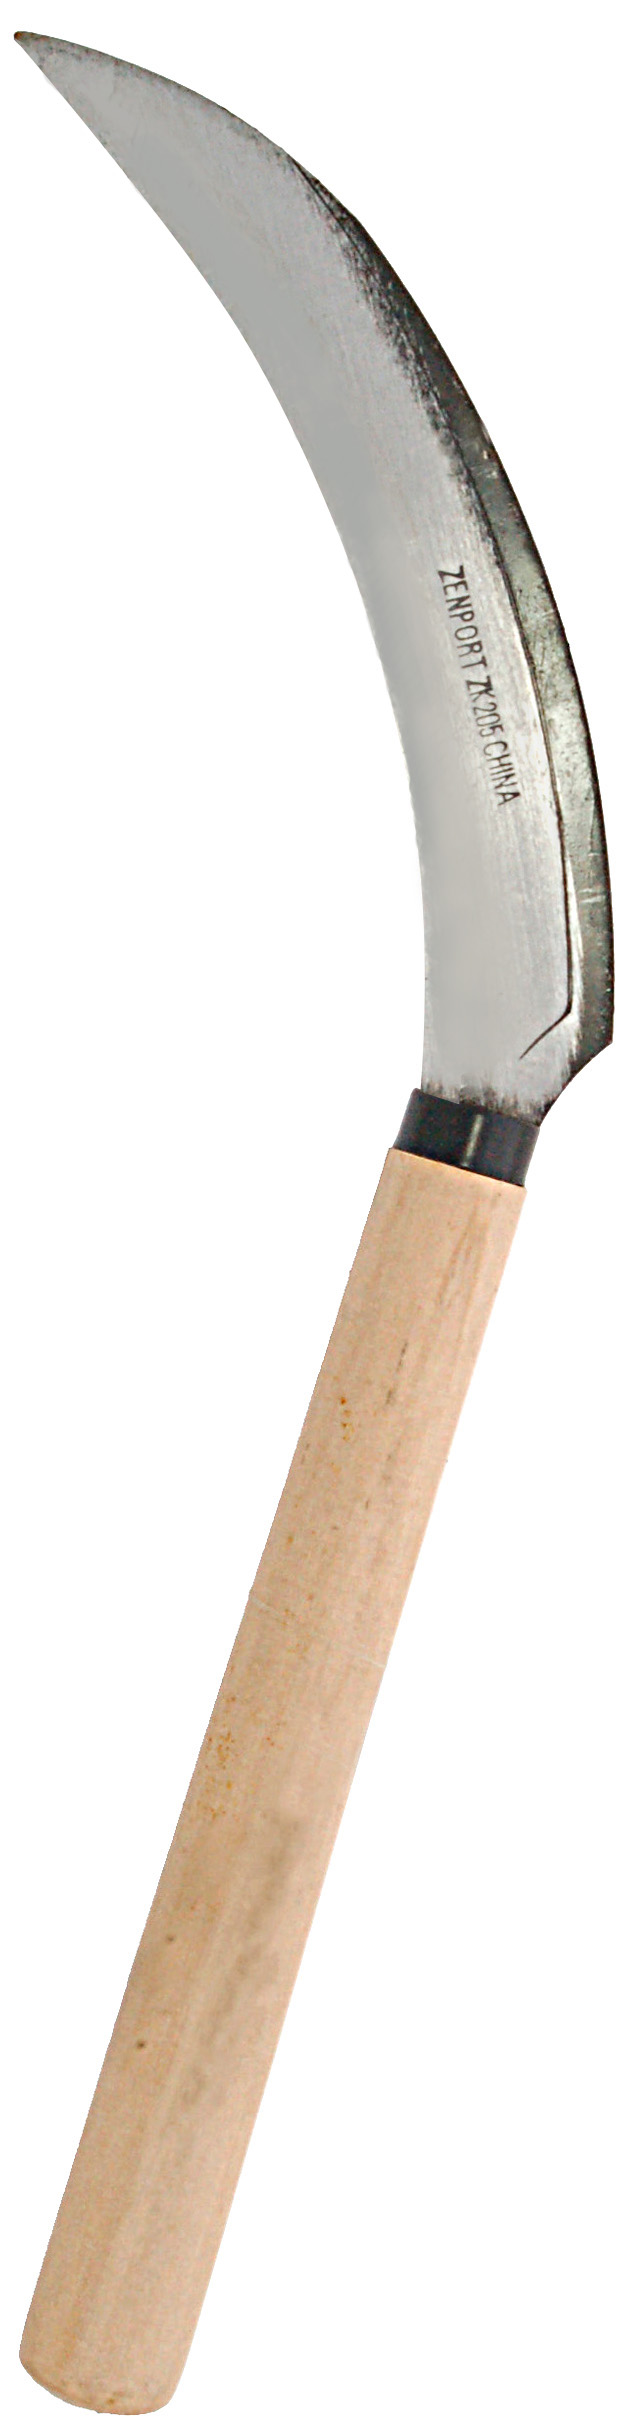 Zenport Sickle K205NF Harvest Knife Weeding, Berry, Lavender, Vegetable, Landscape, Wood Handle, Straight Edge, 6.5-Inch Blade